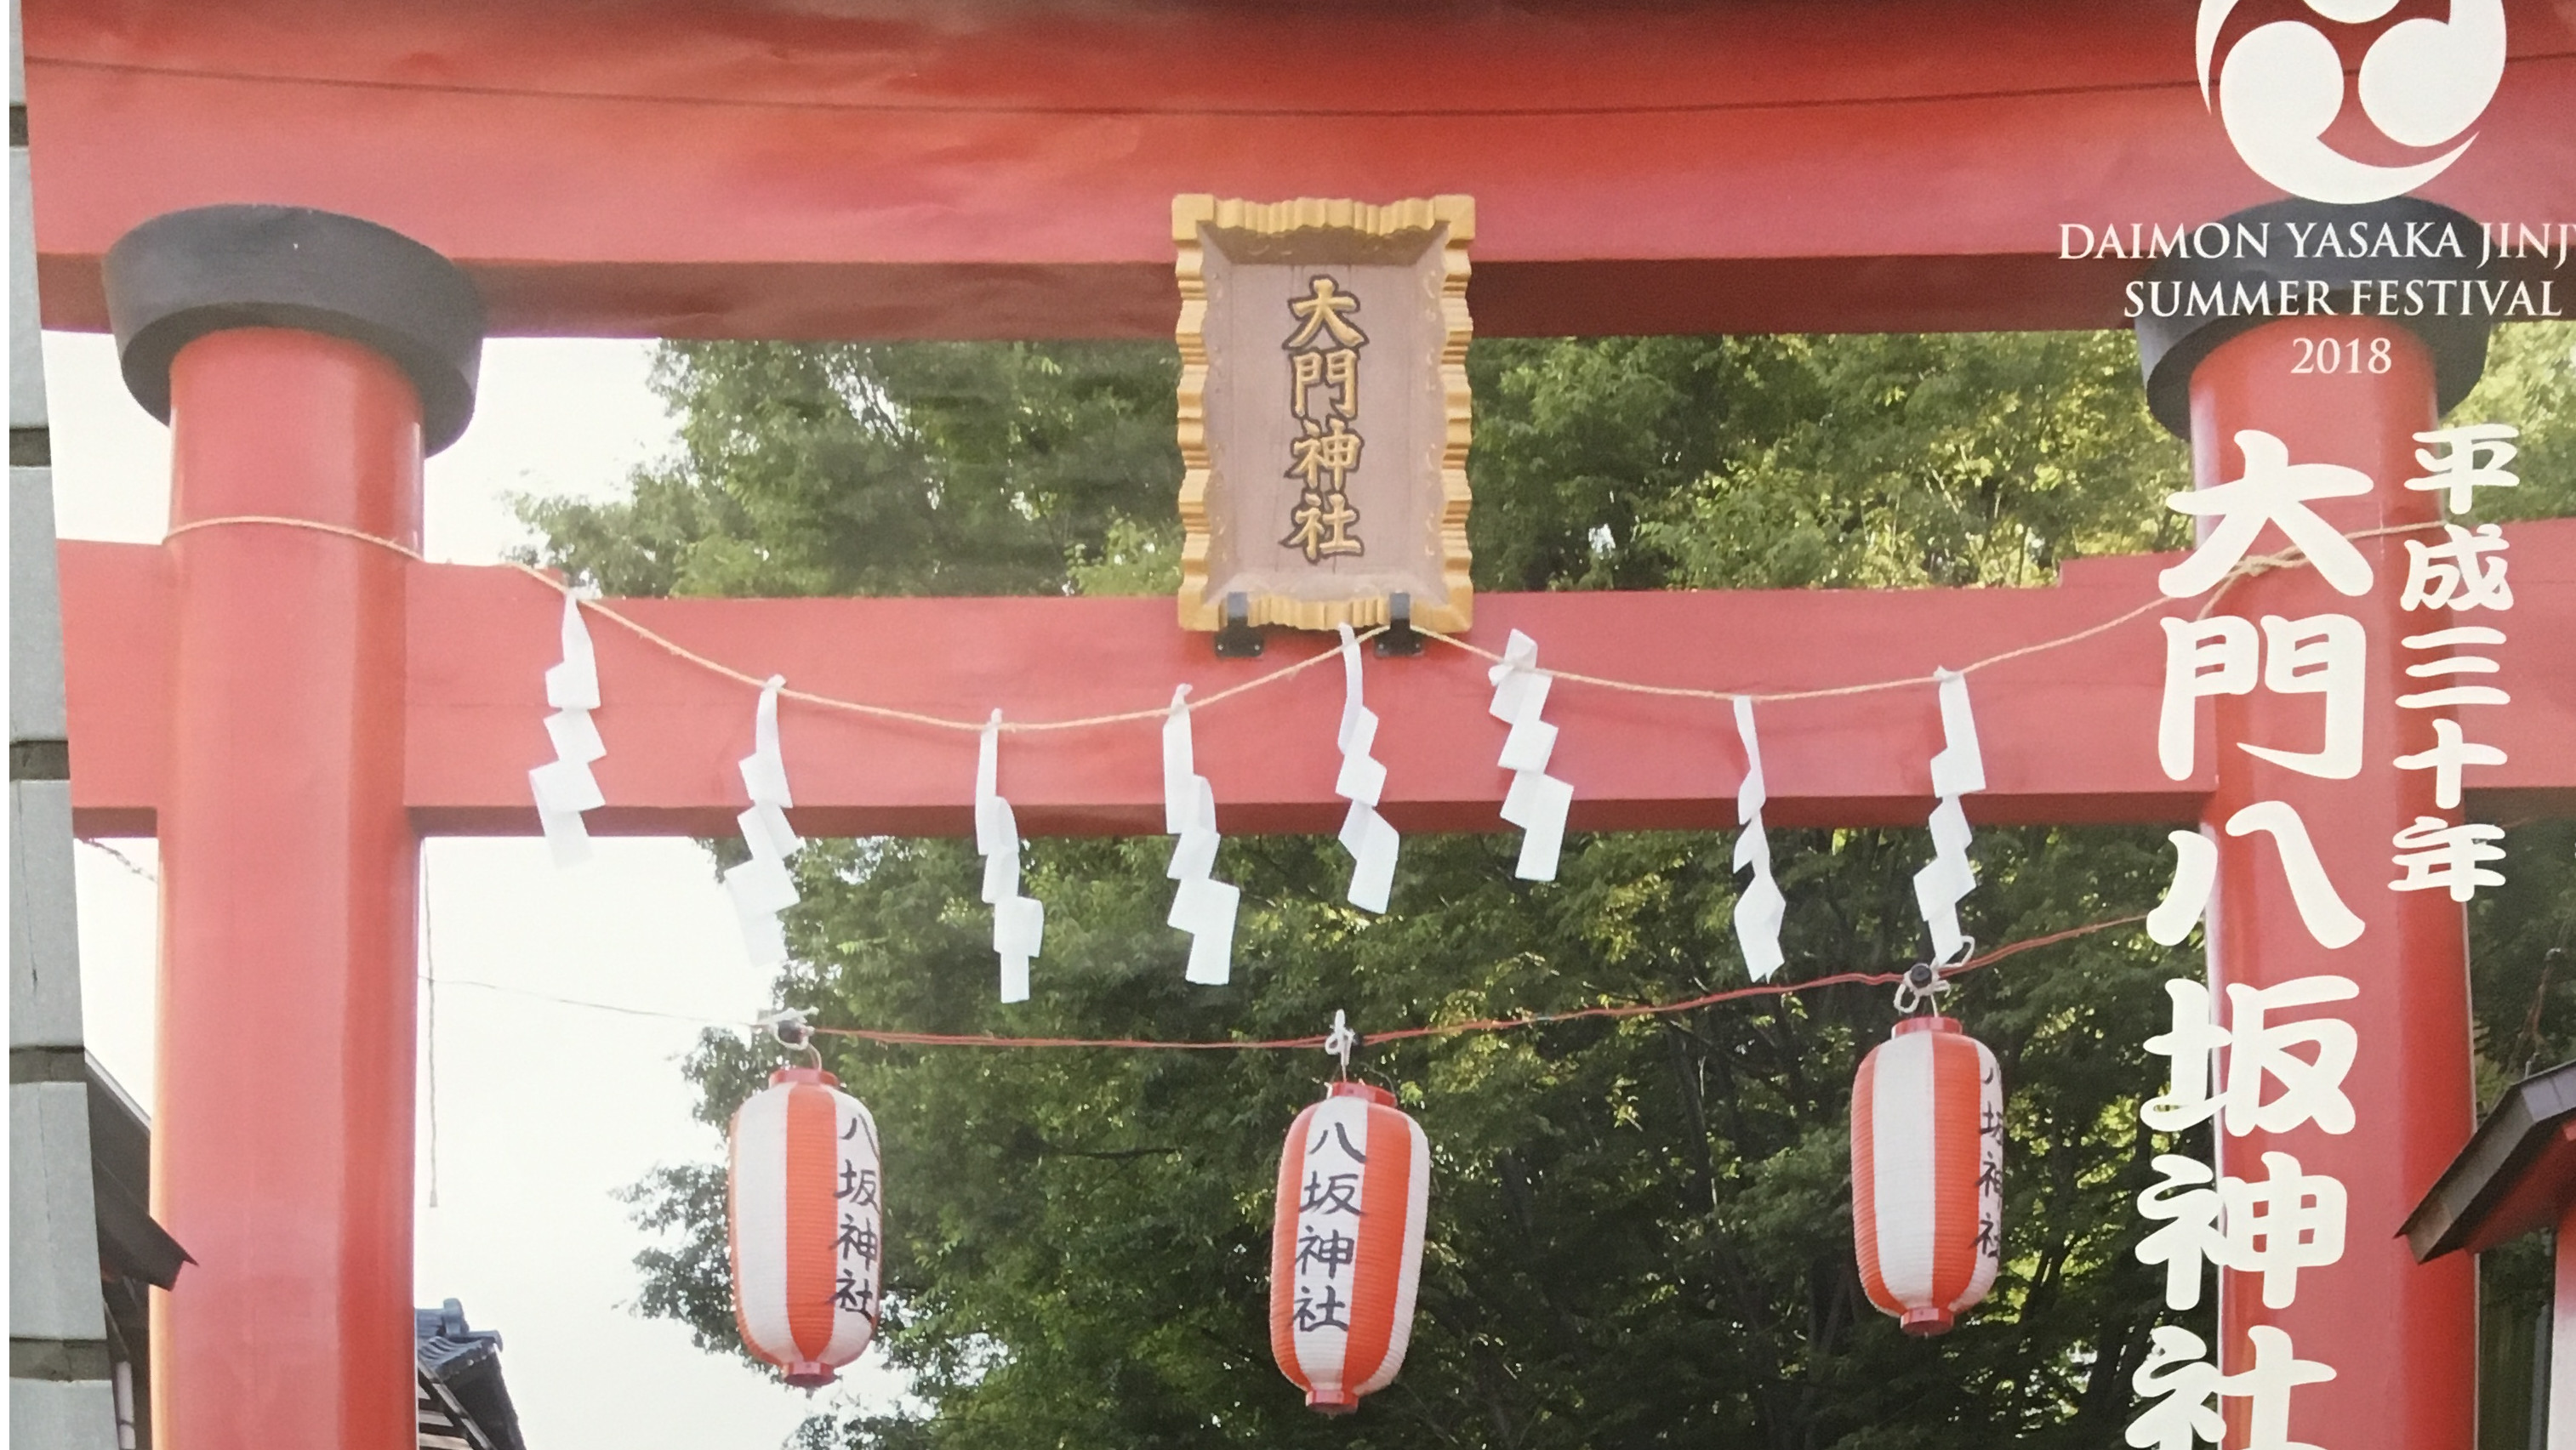 そうだ 浦和美園人の初詣は 氏神様である 大門神社 へ行こう ほぼ浦和美園ブログ